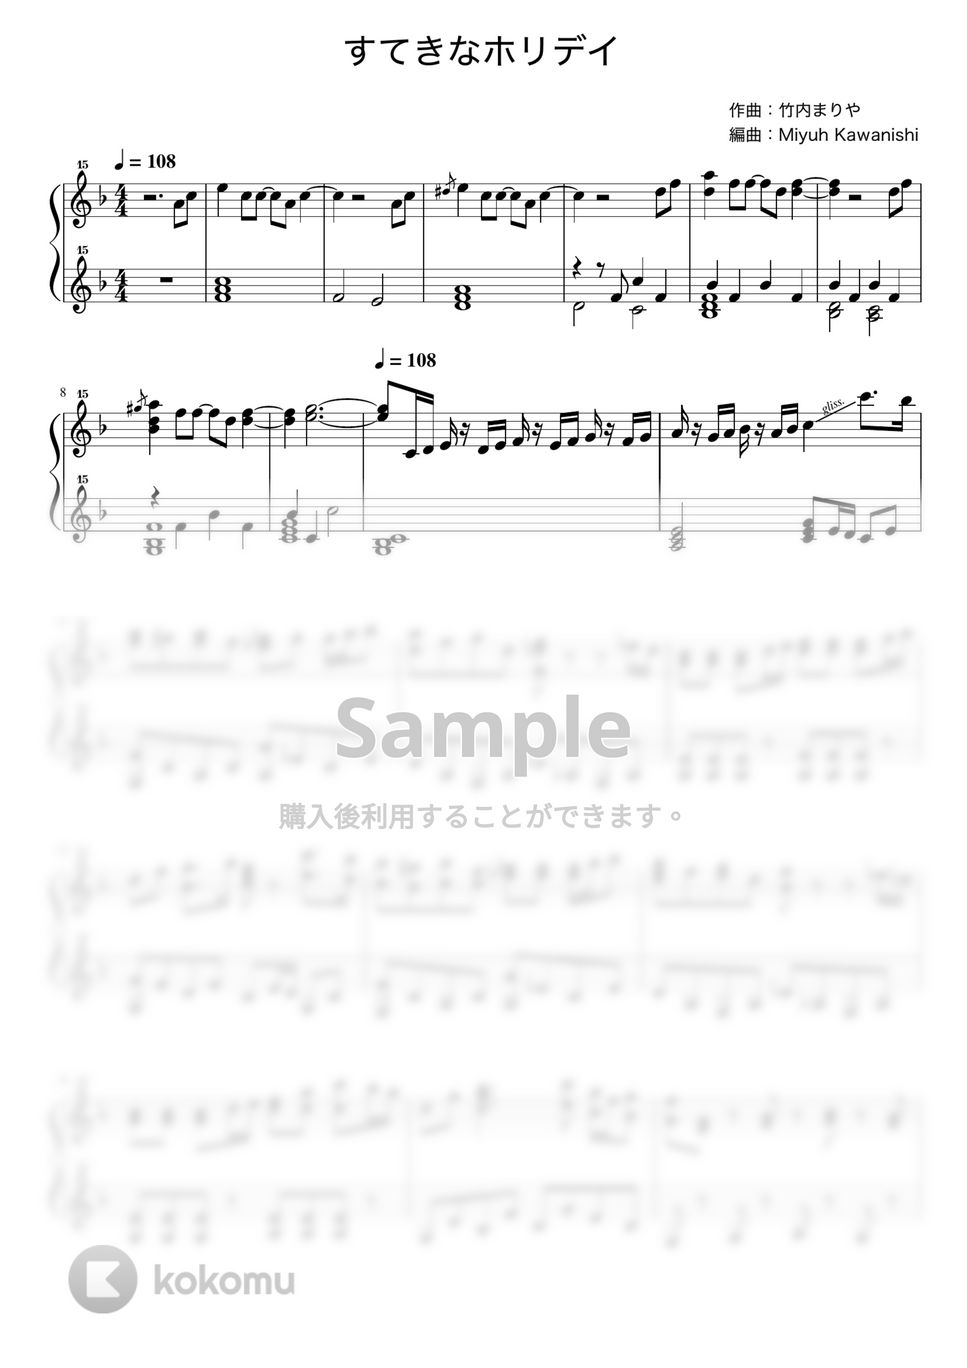 竹内まりや - すてきなホリデイ (トイピアノ / 32鍵盤 / クリスマス) by 川西三裕